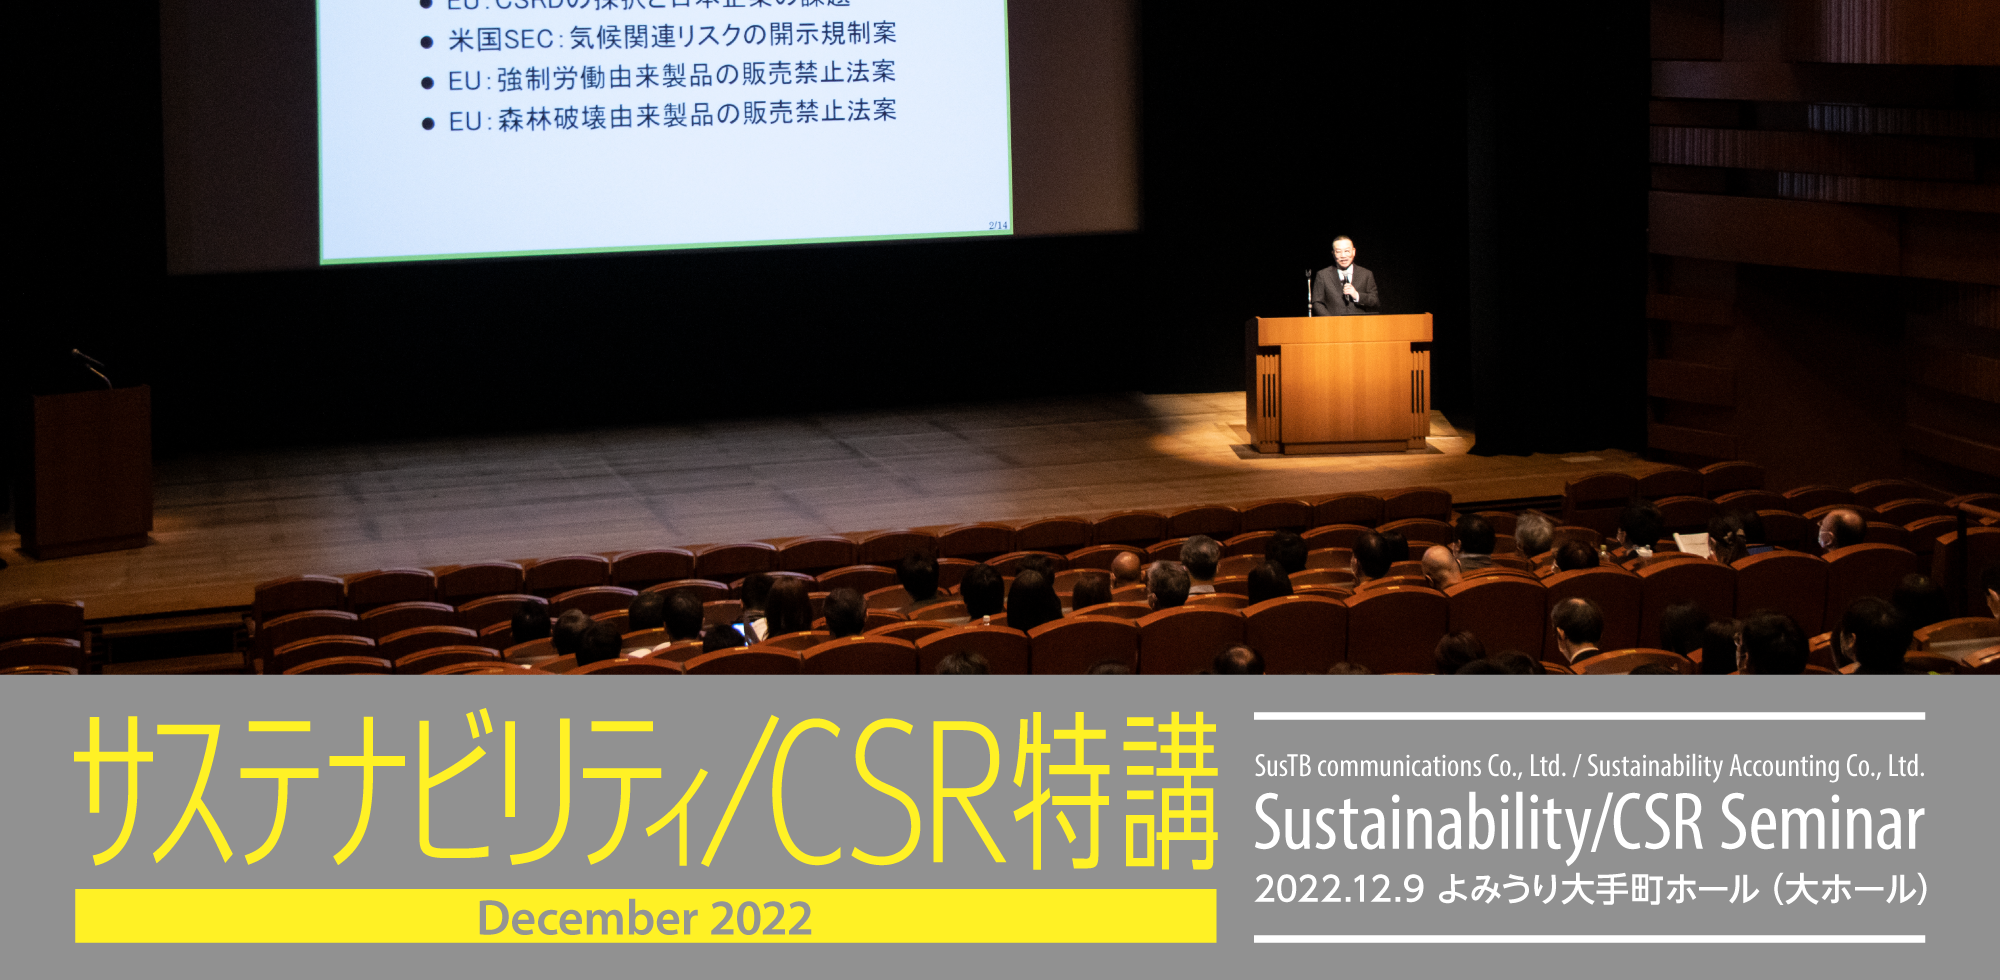 サステナビリティ/CSR特講/CSR SEMINAR 2022.12.9 よみうり大手町ホール（大ホール）